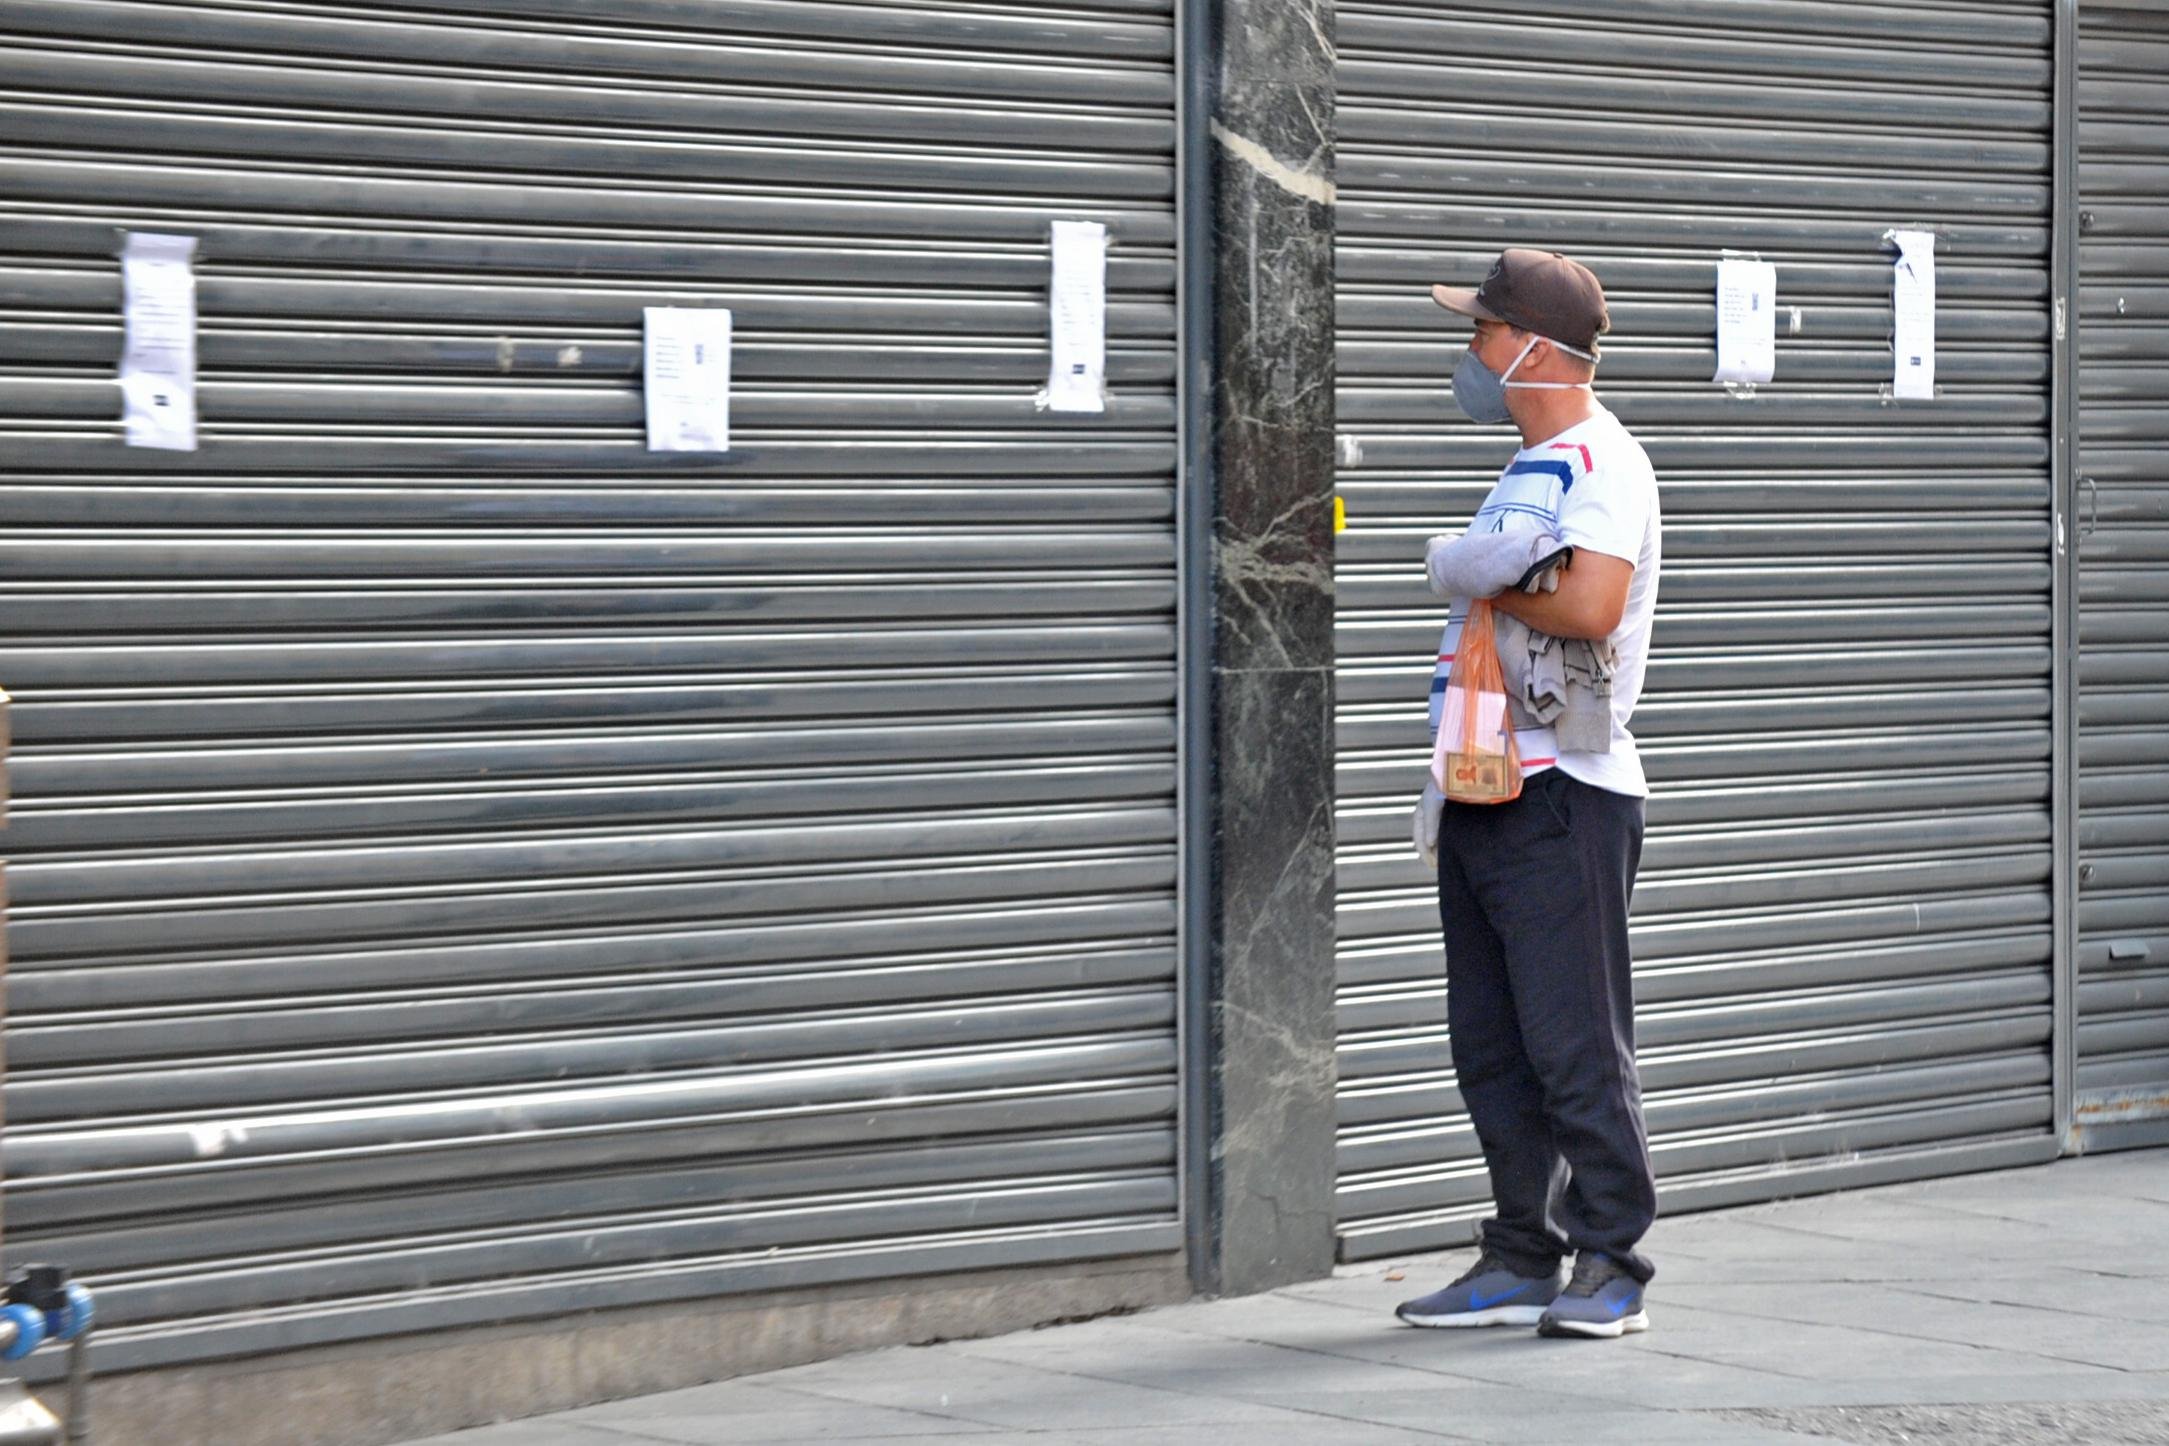 Cidadão observa cartaz ilegível diante de uma loja com as portas fechadas